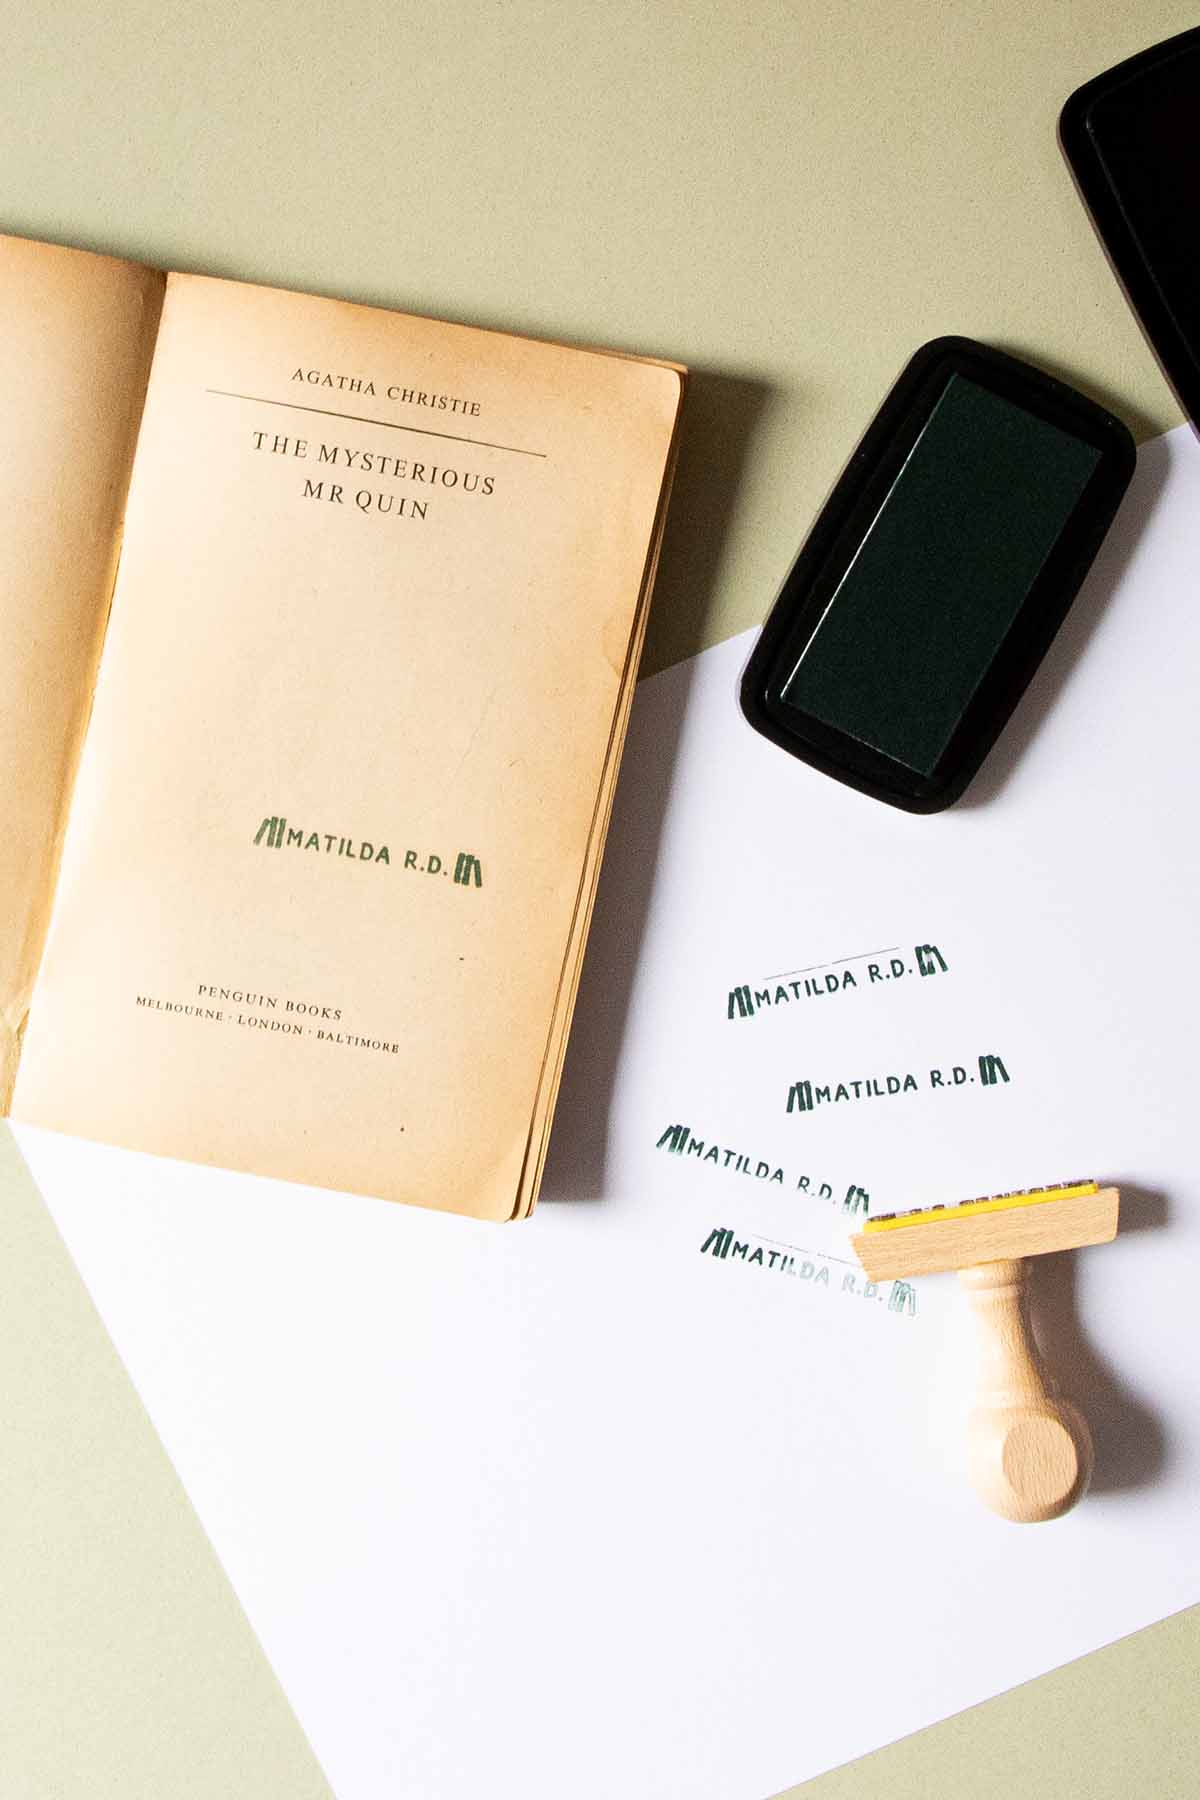 Un libro antiguo titulado "El misterioso Sr. Quin" de Agatha Christie, estampado con Les Tampons de Roser, yace abierto sobre una superficie junto a un teléfono inteligente moderno, con un lápiz y una goma de borrar.